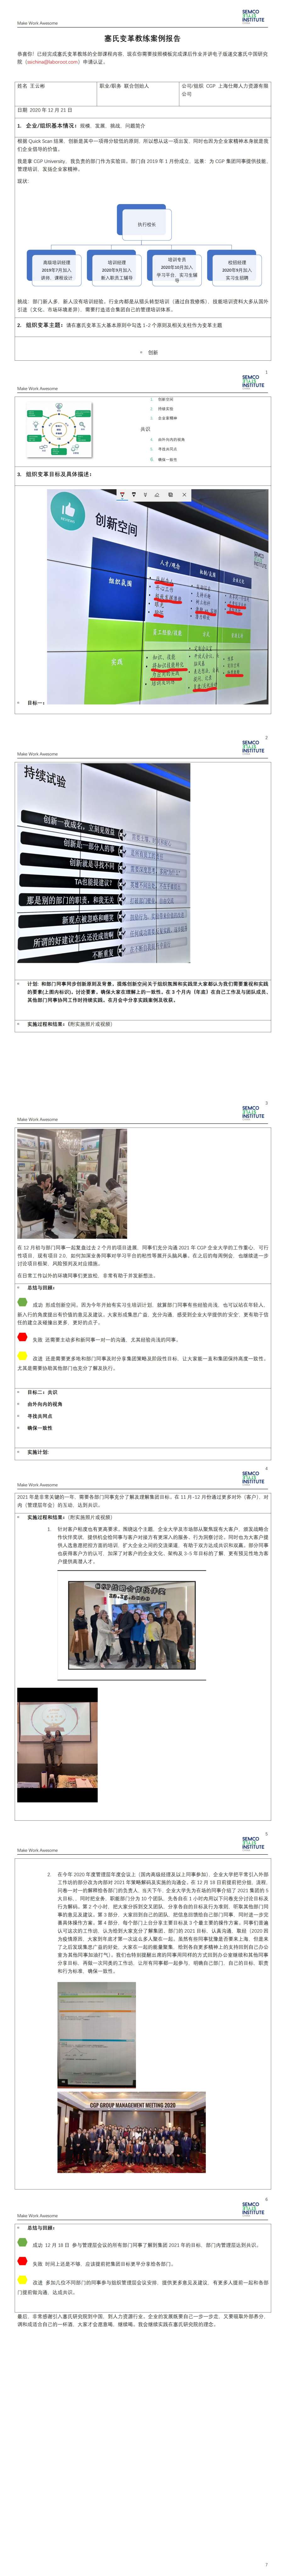 塞氏变革教练认证案例报告-CGP 仕卿人力 王云彬.jpg